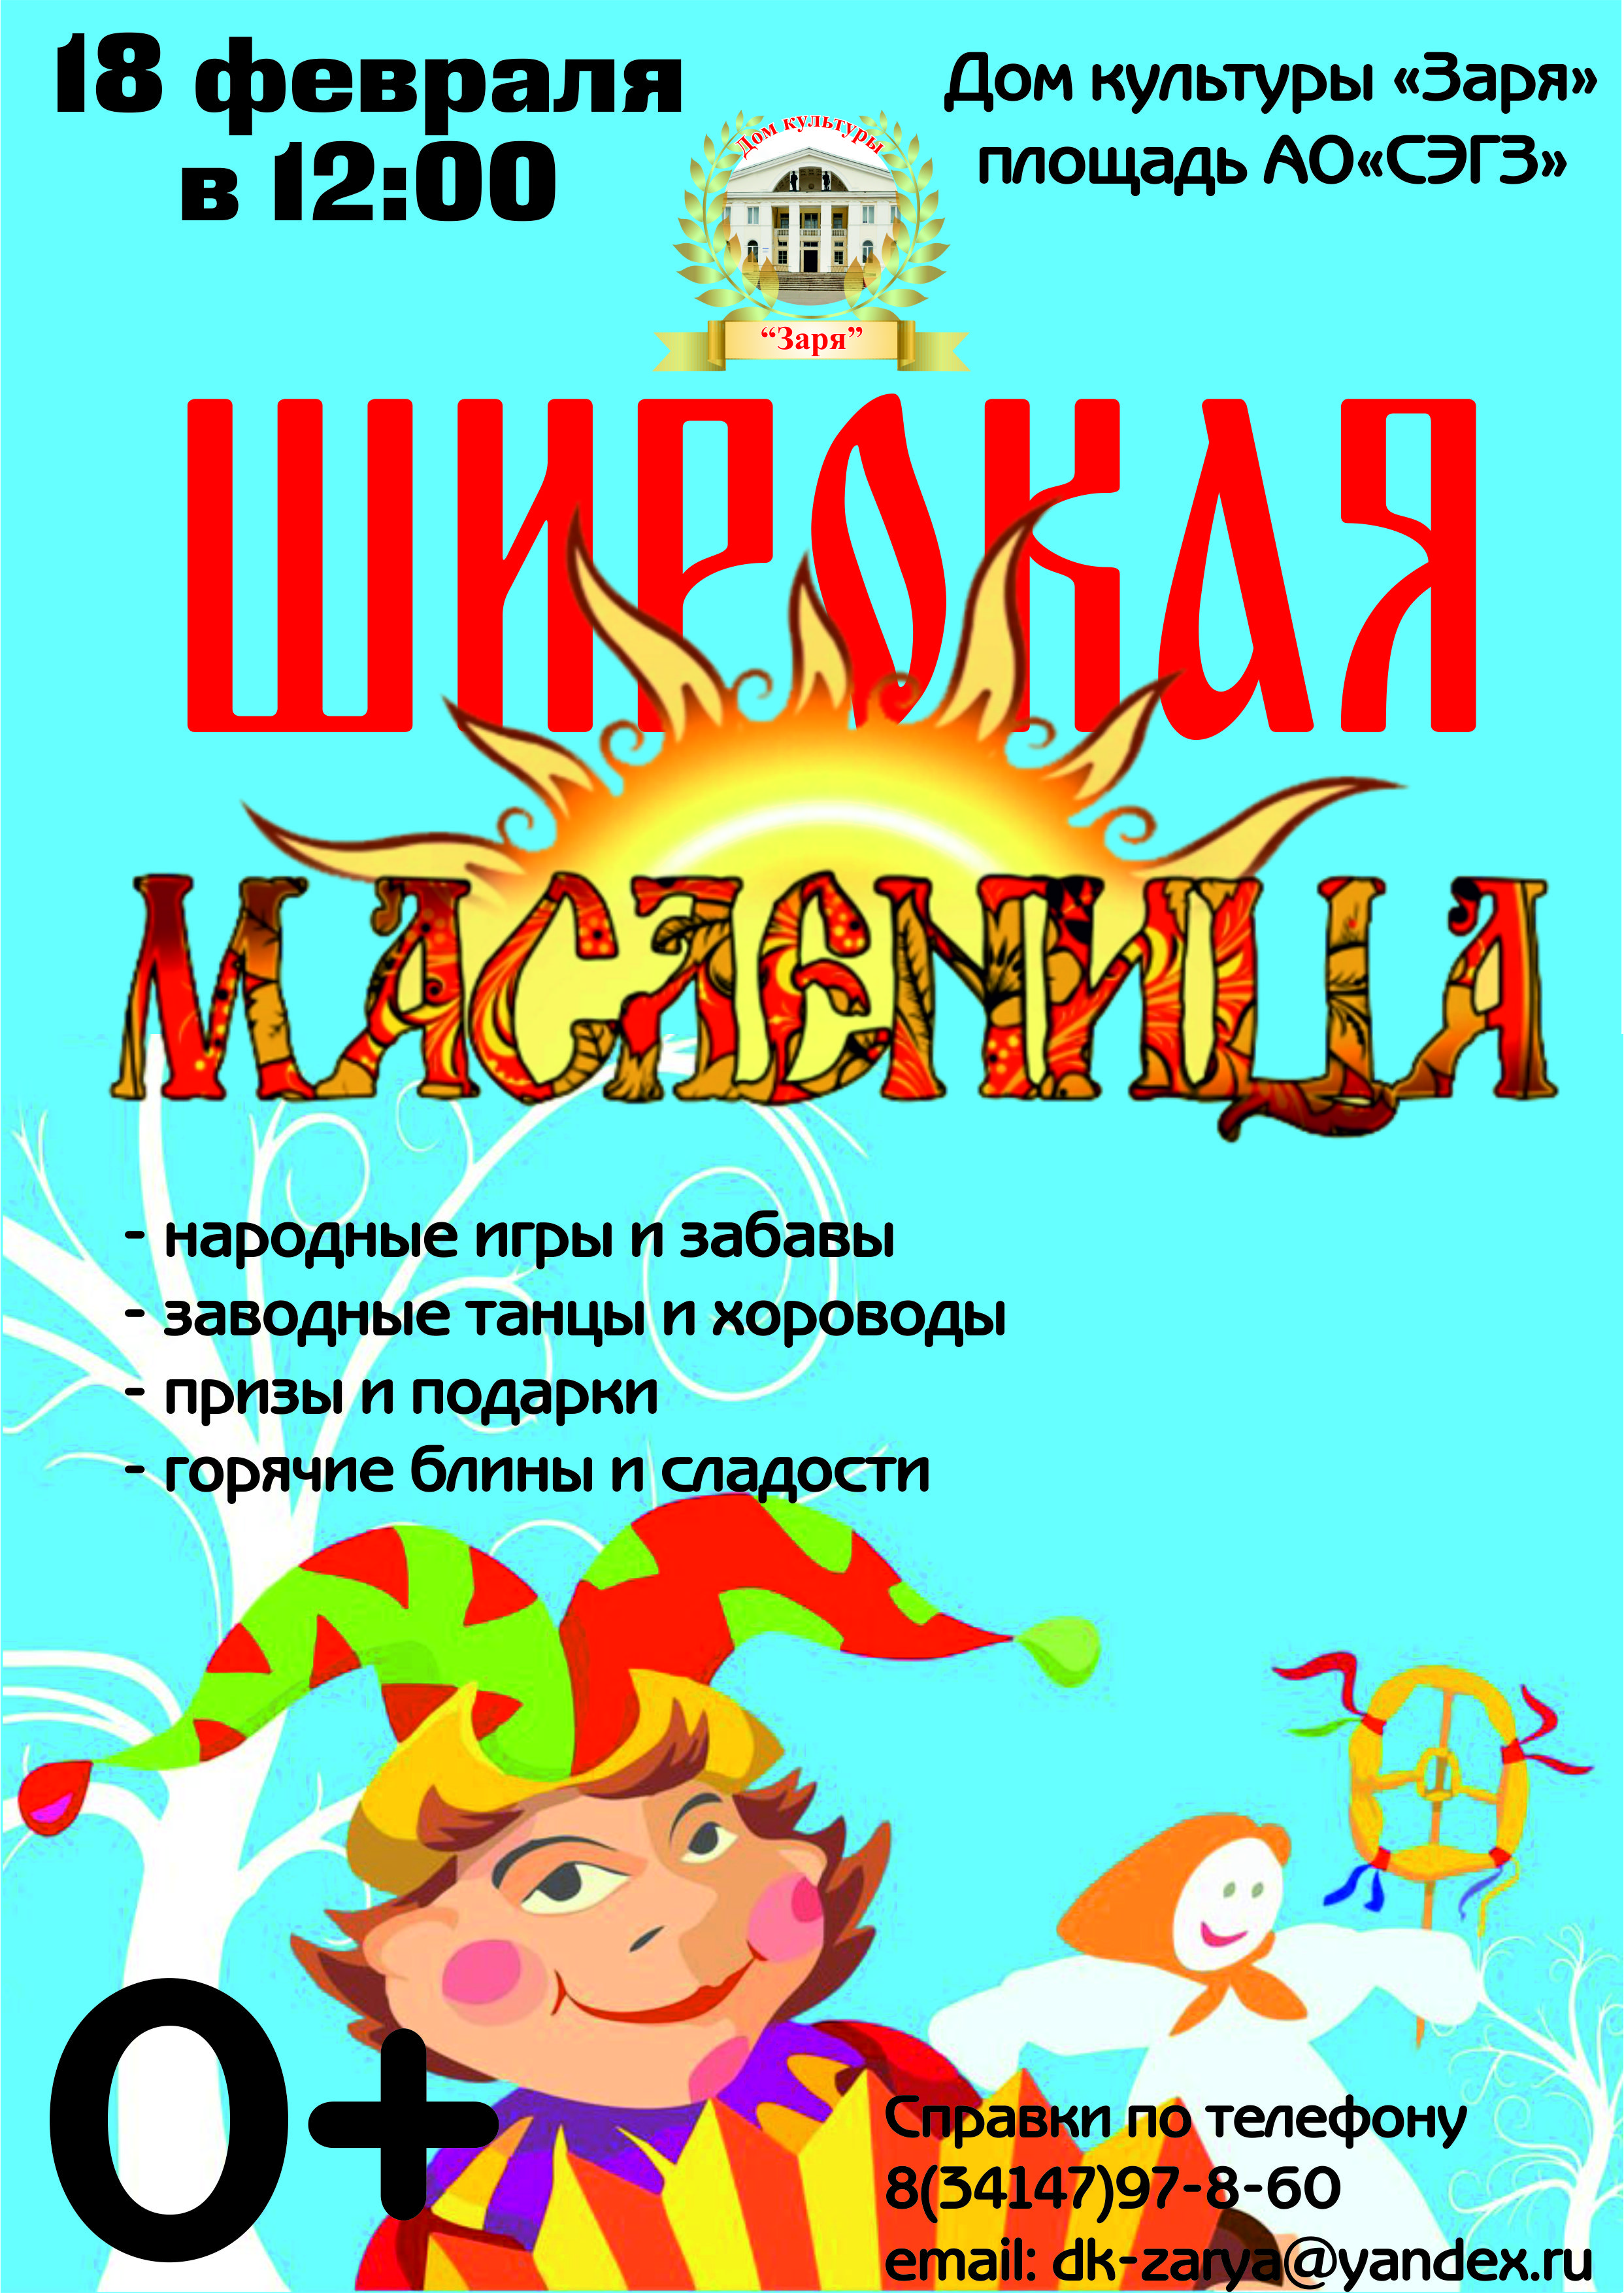 Maslenitsa - Приглашаем всех жителей города на Масленицу!